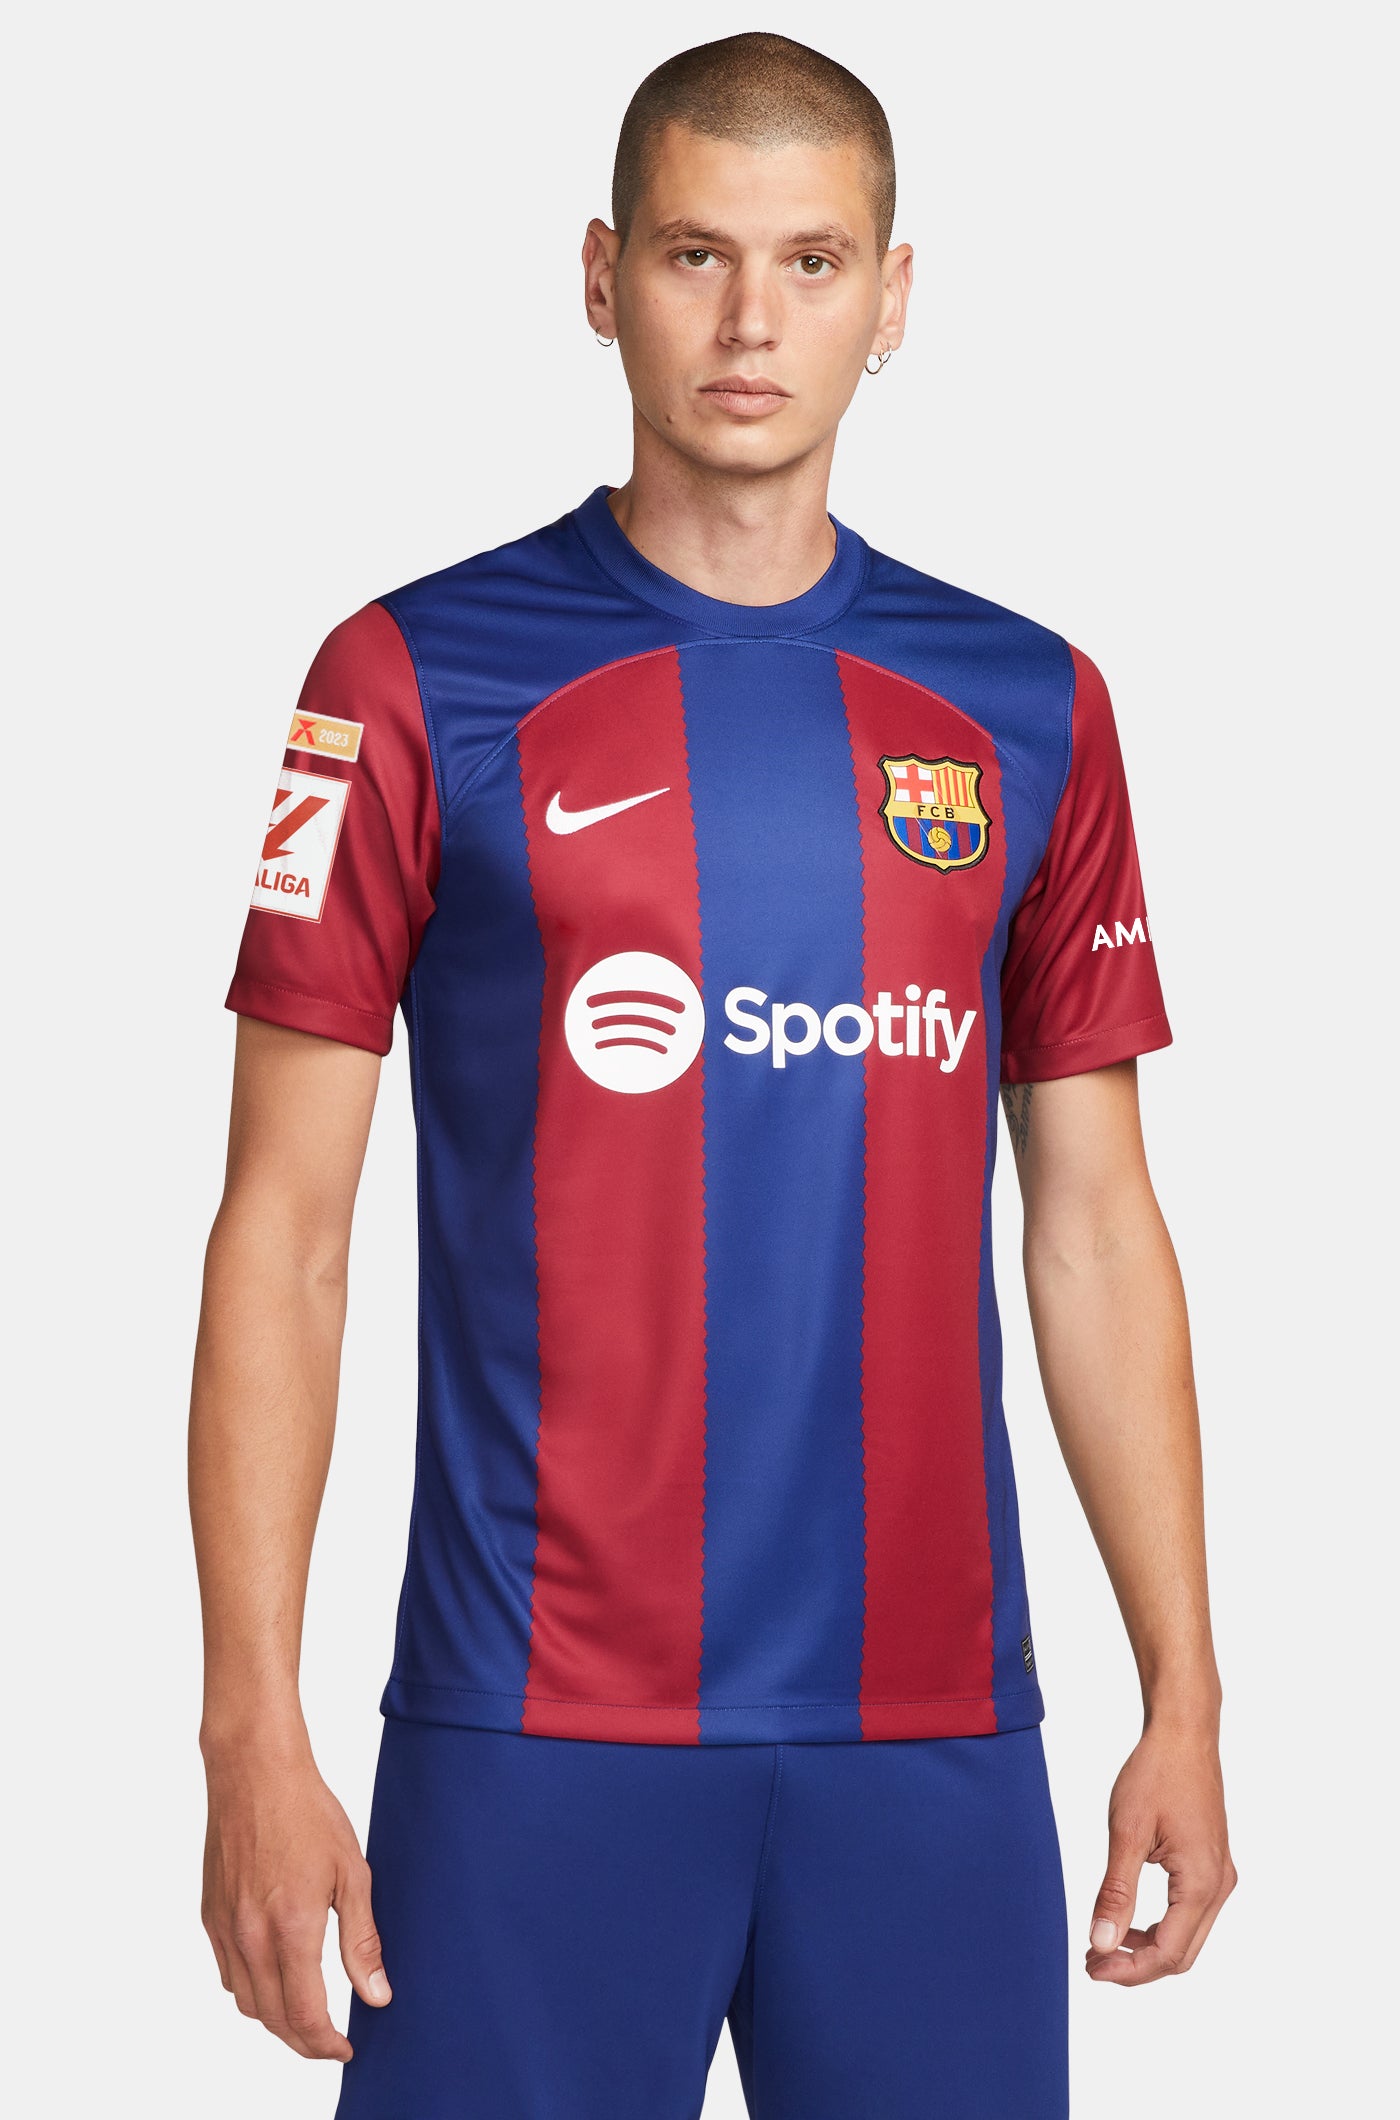 LFP FC Barcelona home shirt 23/24  - LAMINE YAMAL